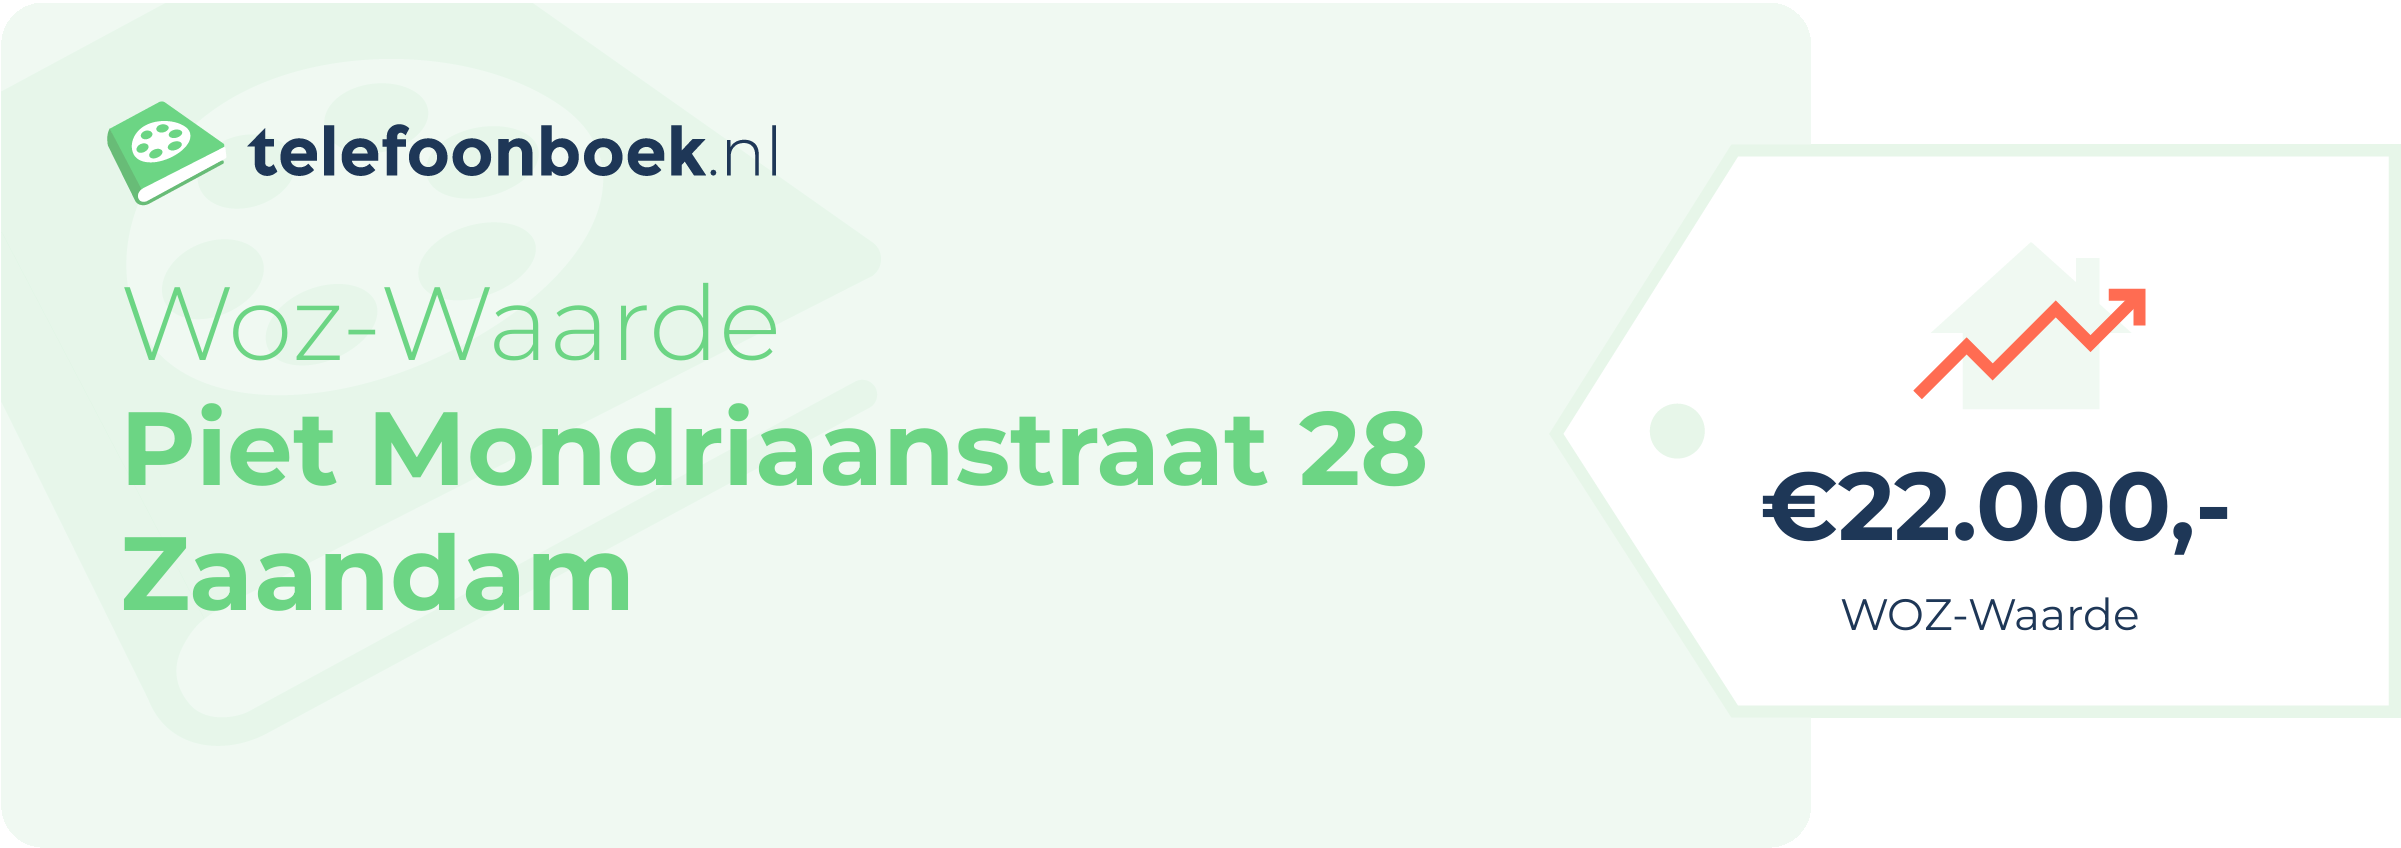 WOZ-waarde Piet Mondriaanstraat 28 Zaandam